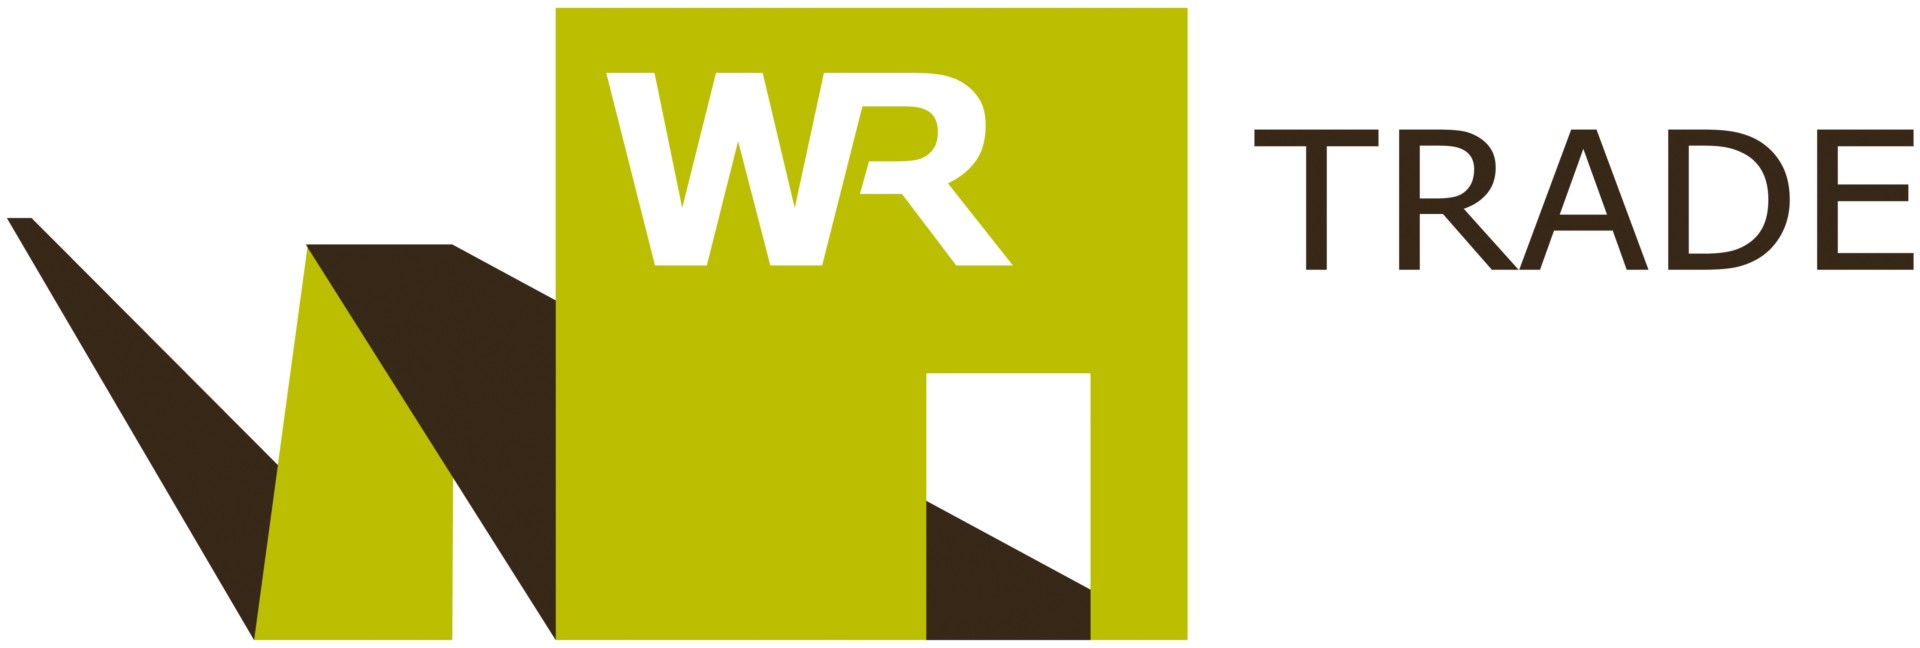 WR_Trade_Logo_def